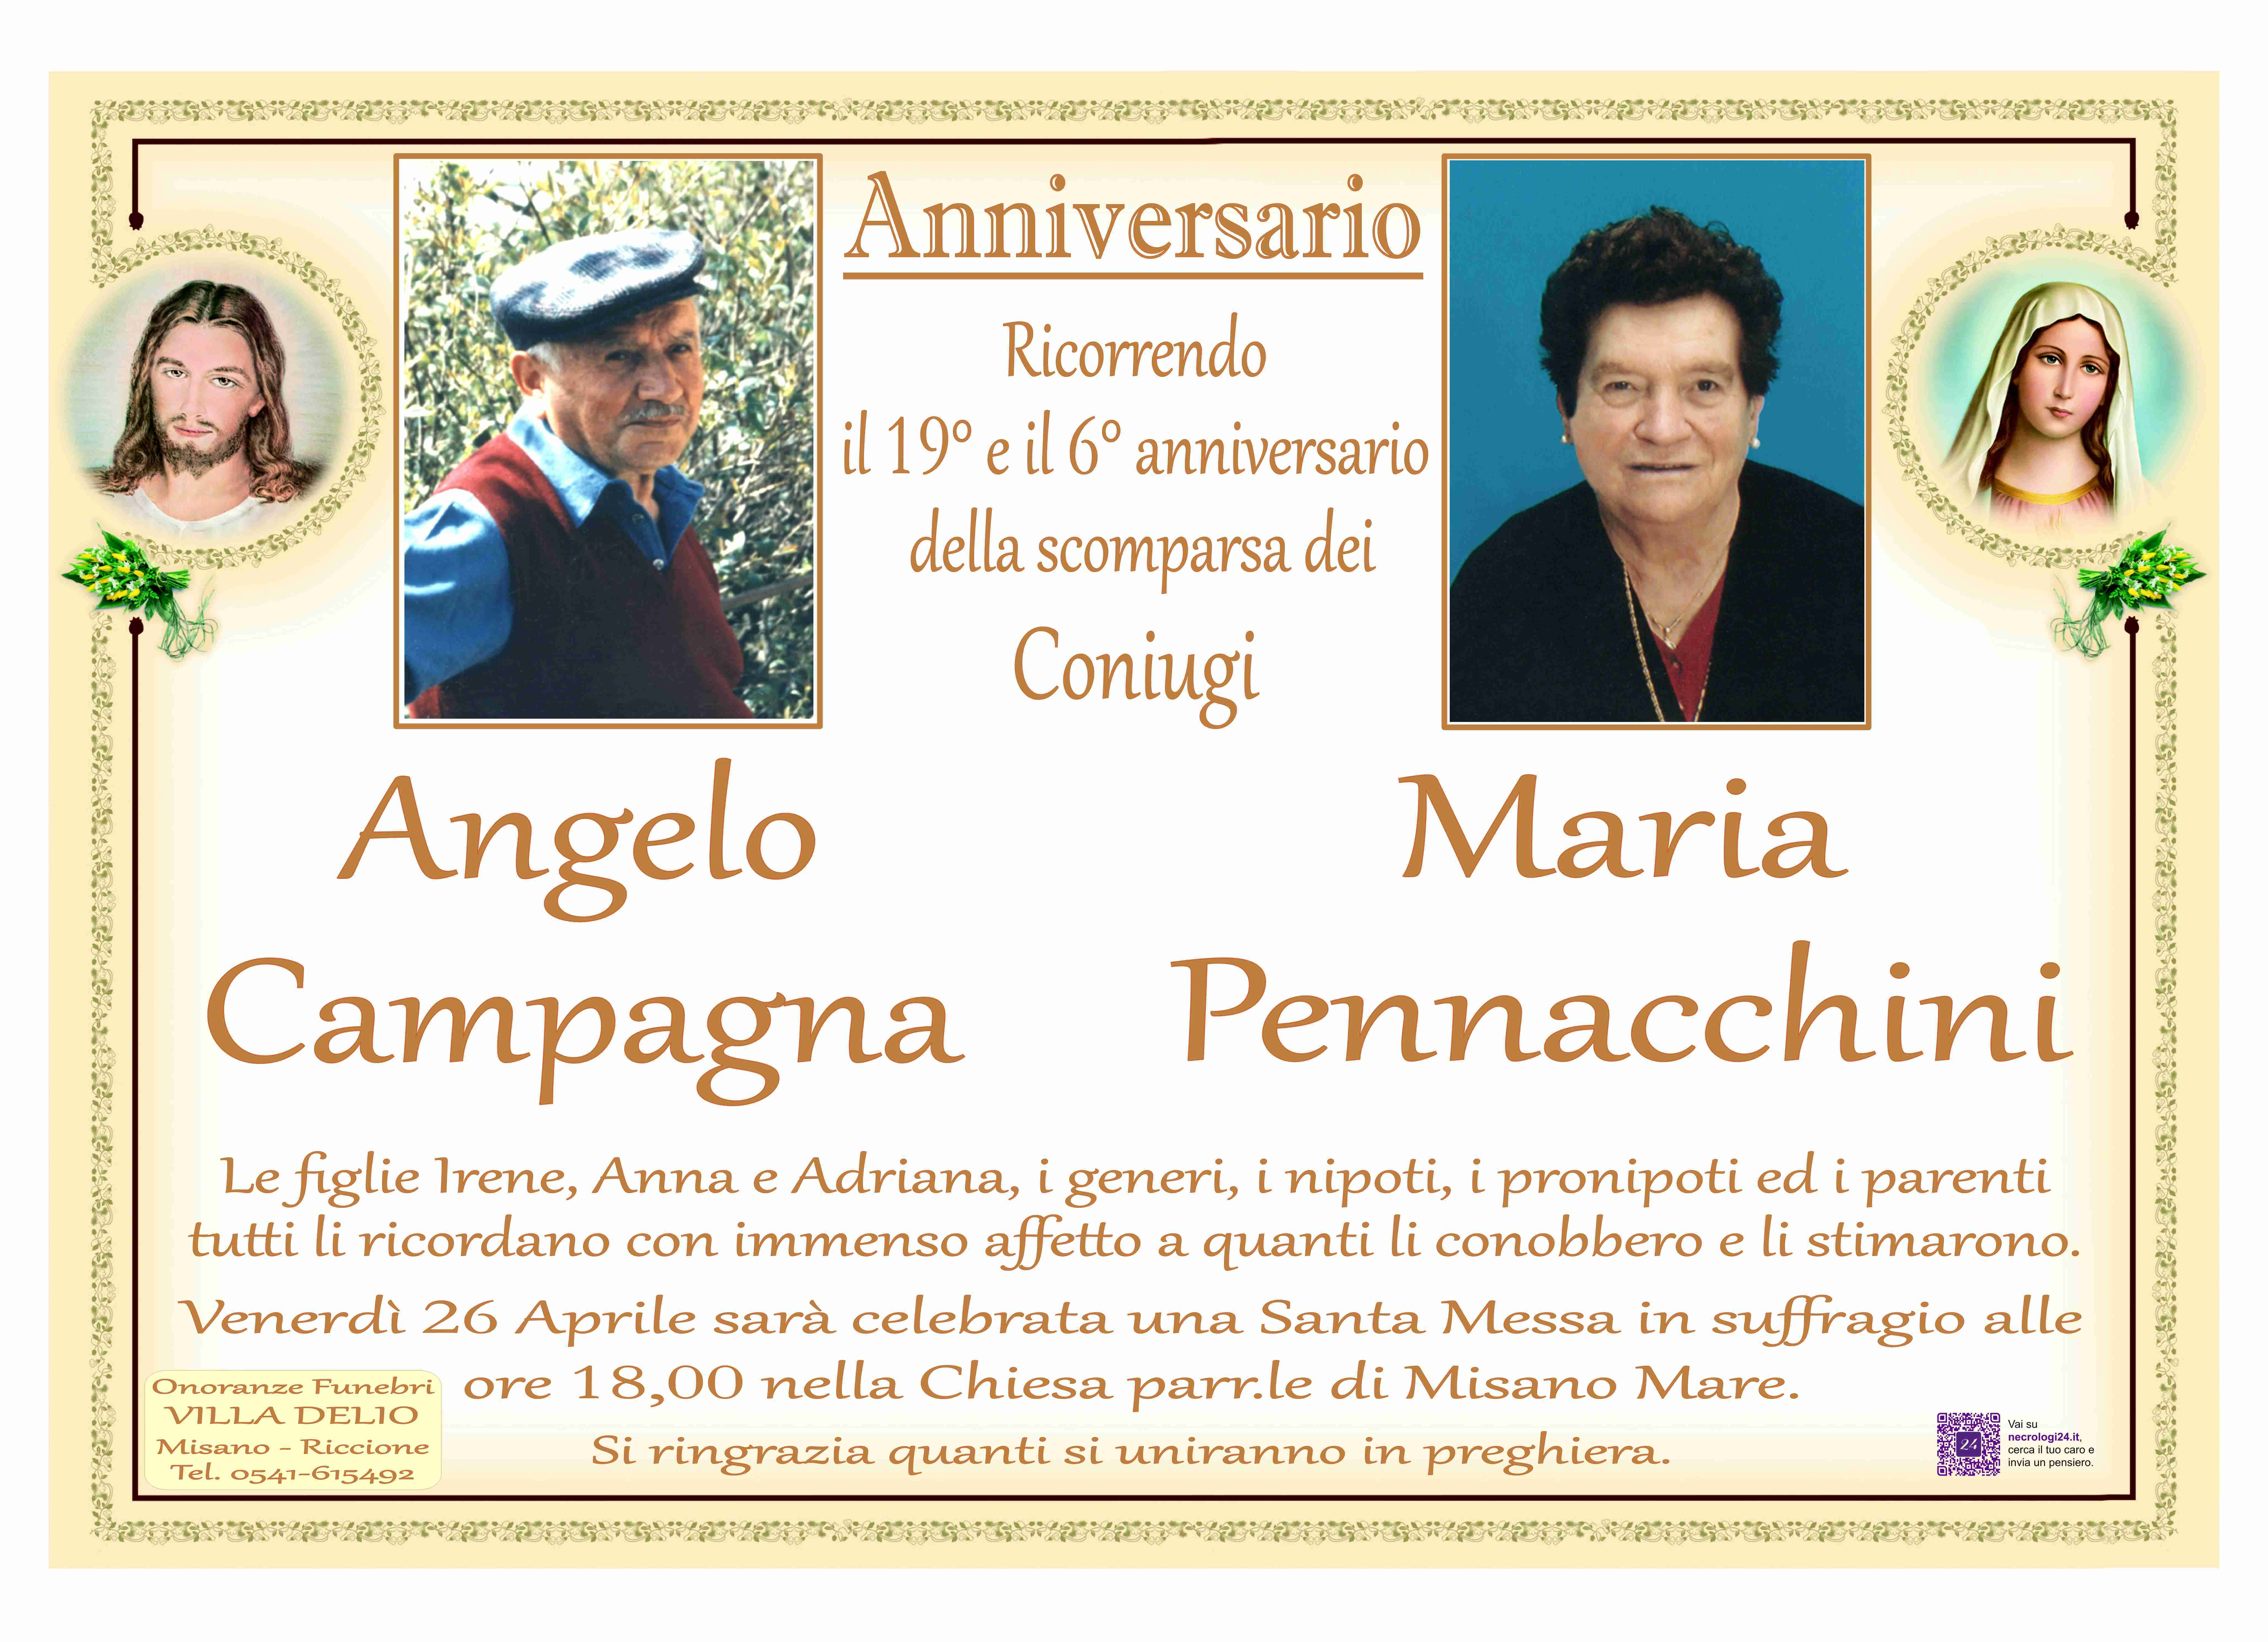 Angelo Campagna e Maria Pennacchini